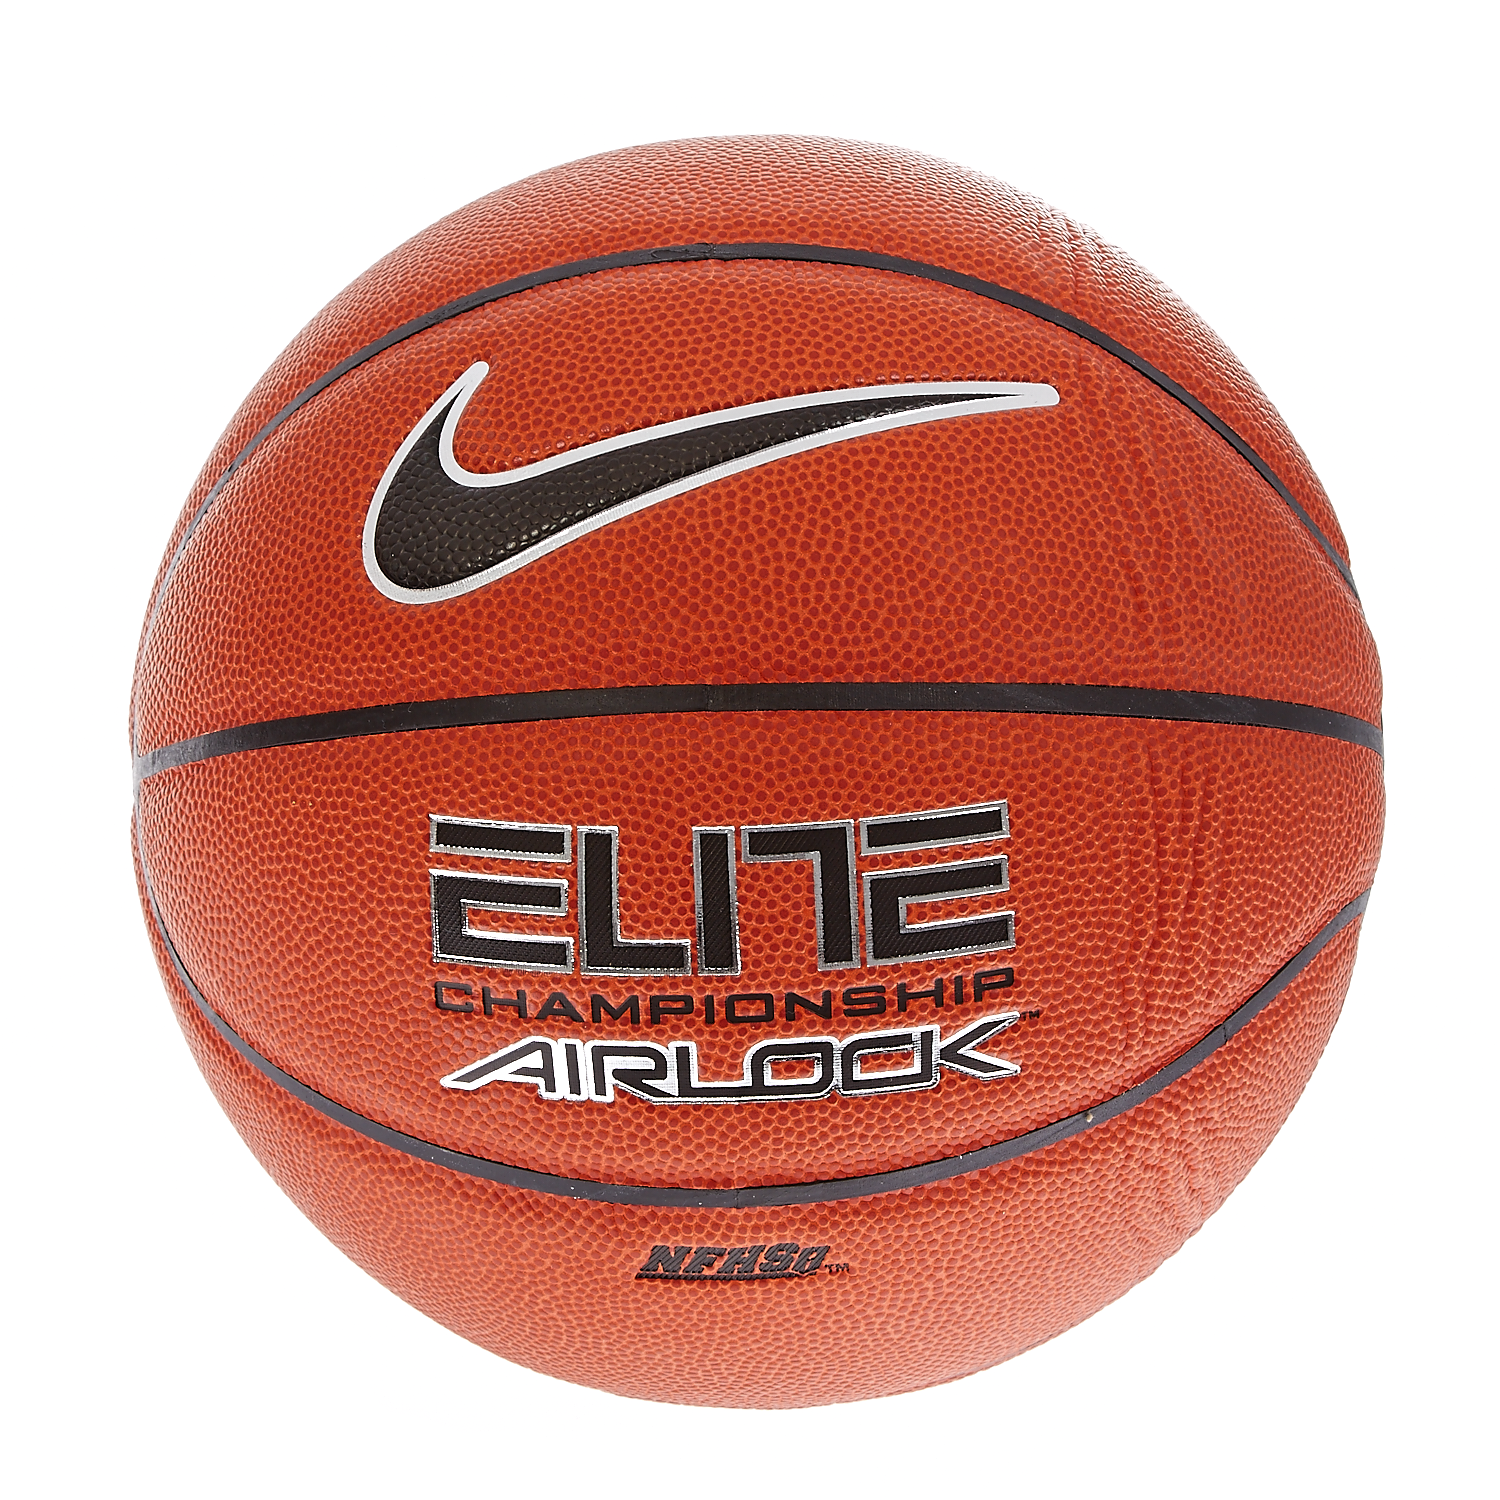 Ανδρικά/Αξεσουάρ/Αθλητικά Είδη/Μπάλες NIKE - Μπάλα μπάσκετ Nike πορτοκαλί